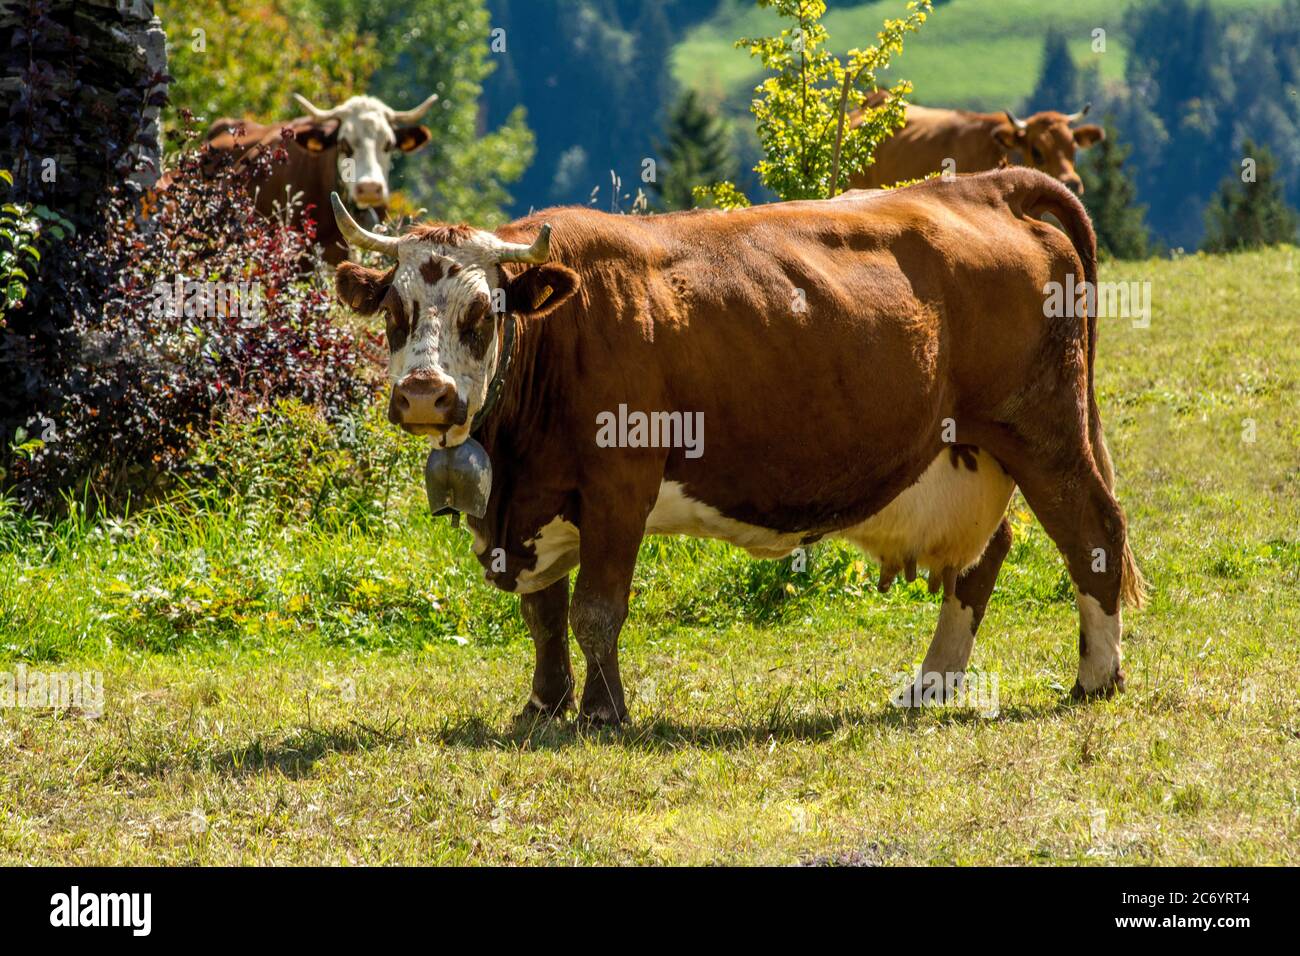 Abondance Kühe in den französischen Alpen, Savoie, Auvergne Rhone Alpes, Frankreich Stockfoto